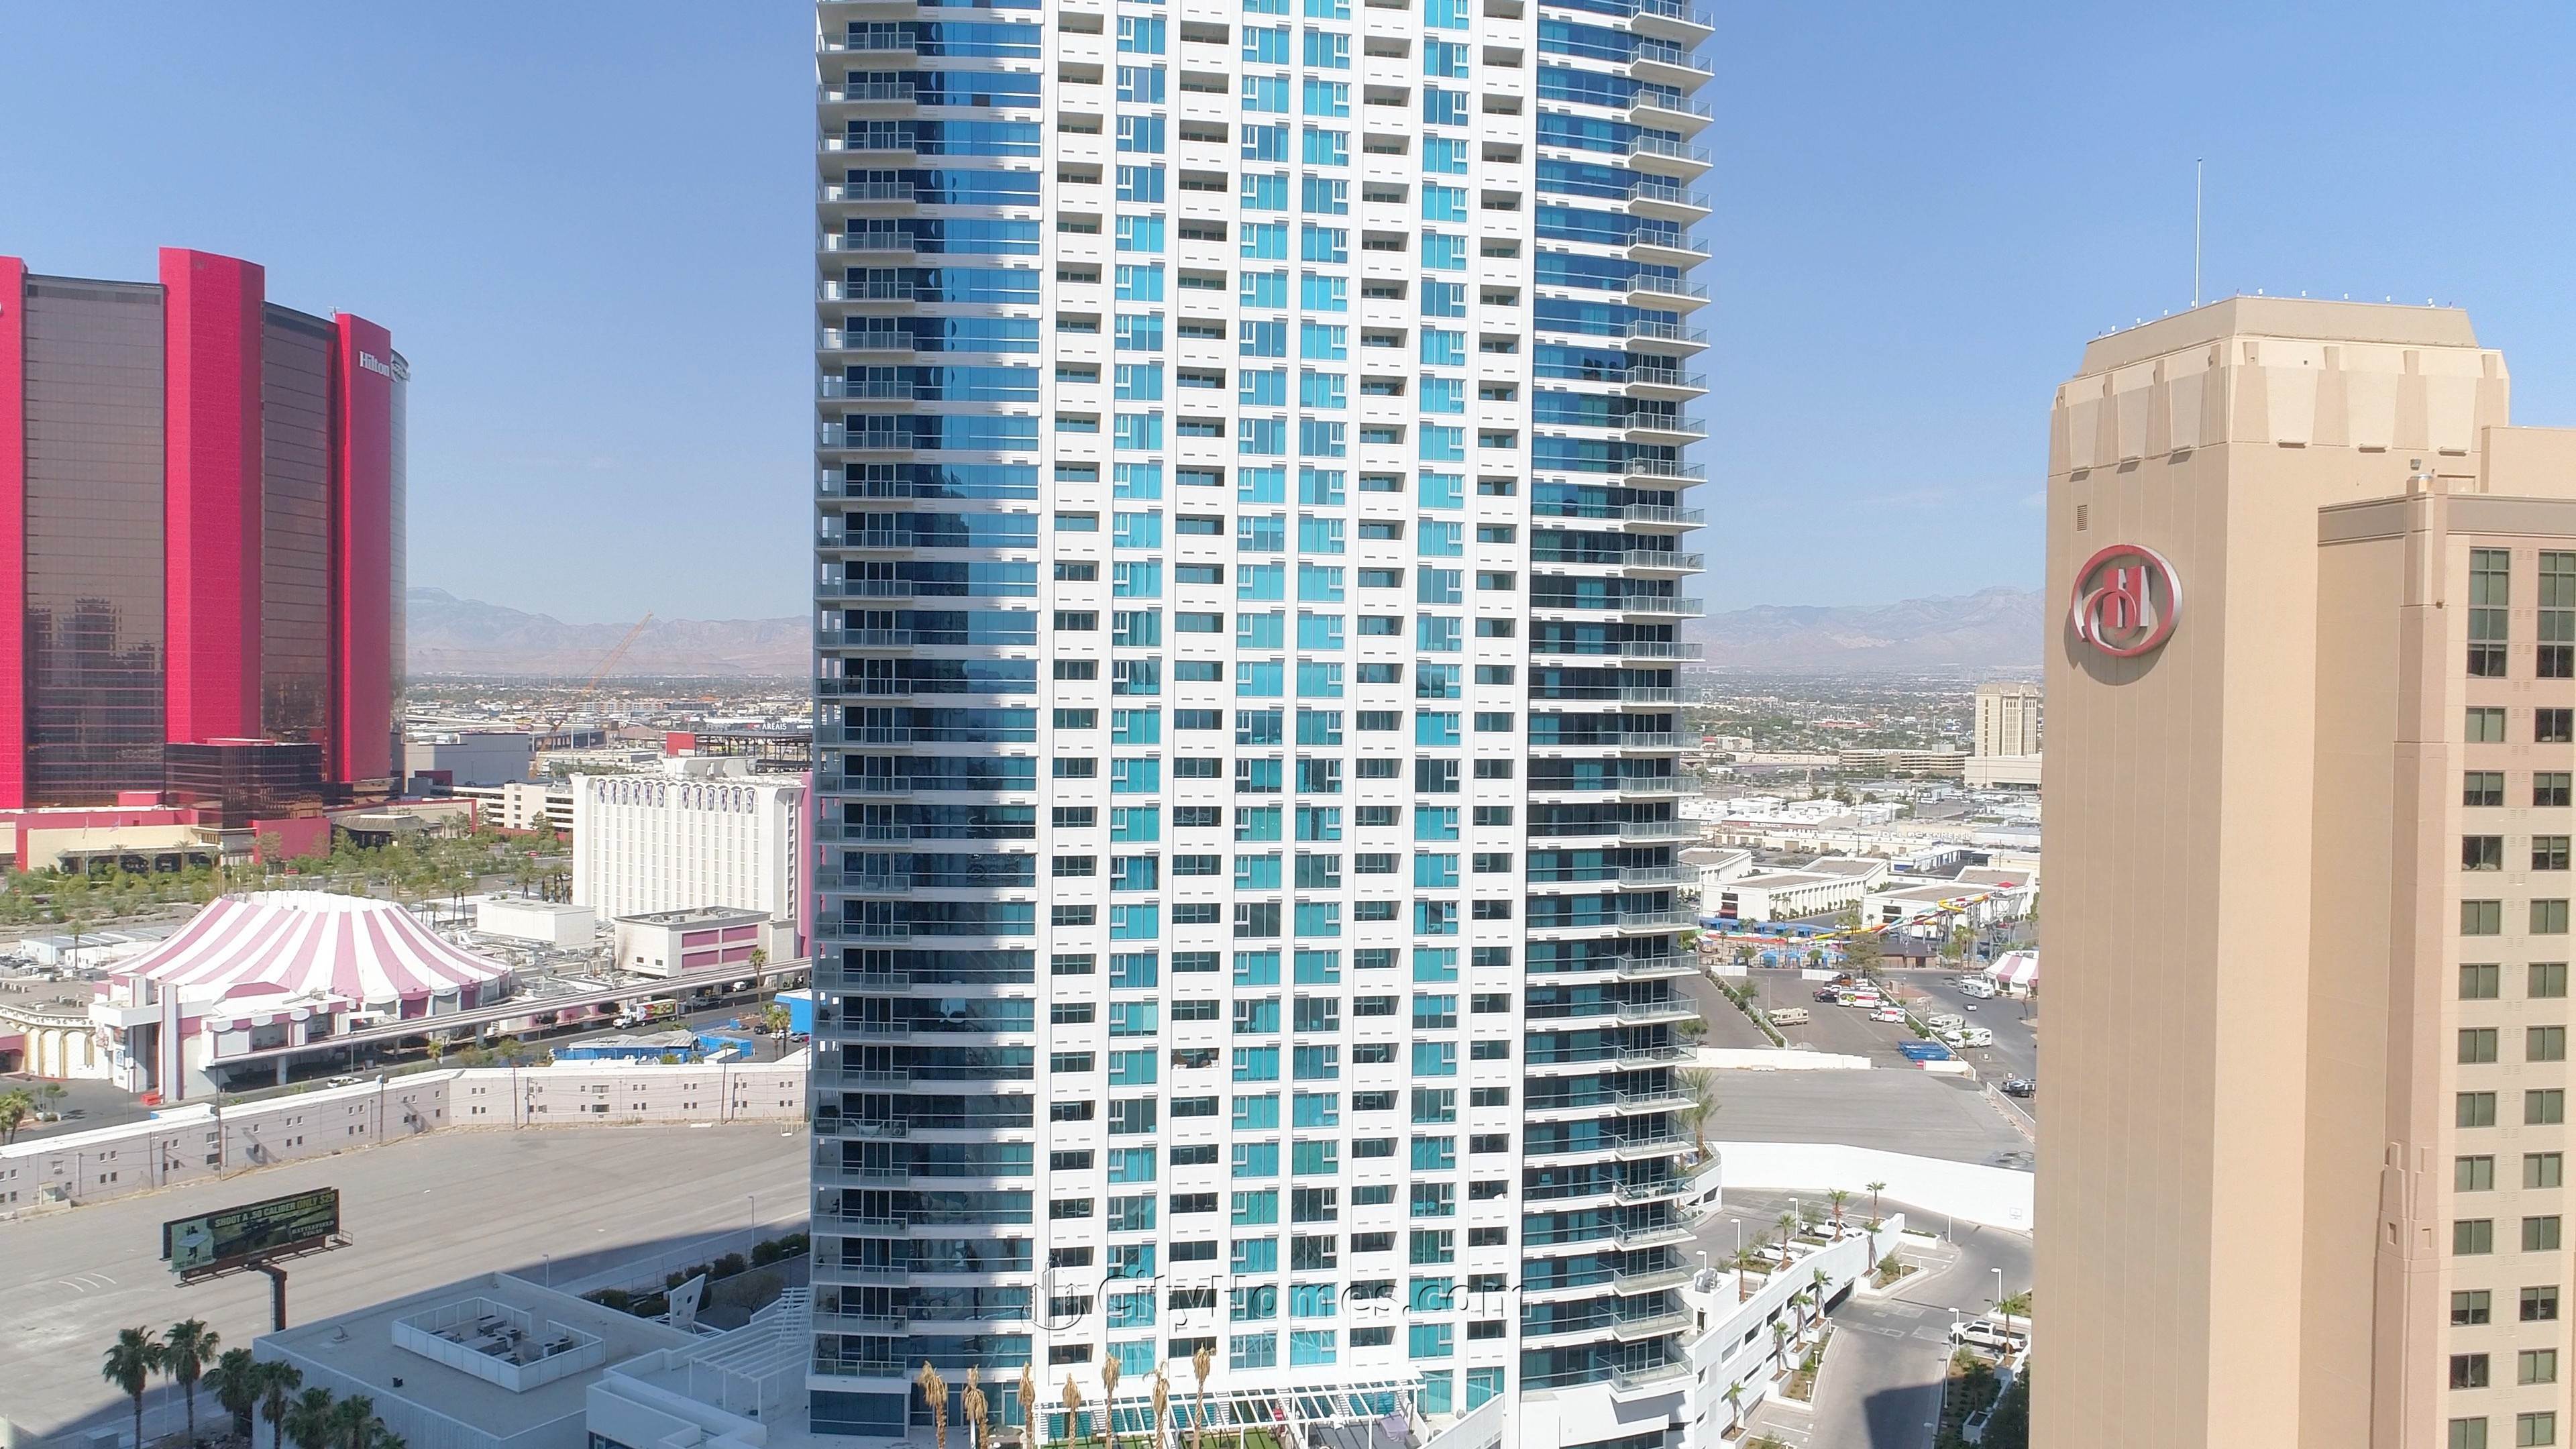 5. Sky Las Vegas building at 2700 S Las Vegas Blvd, Las Vegas, NV 89169